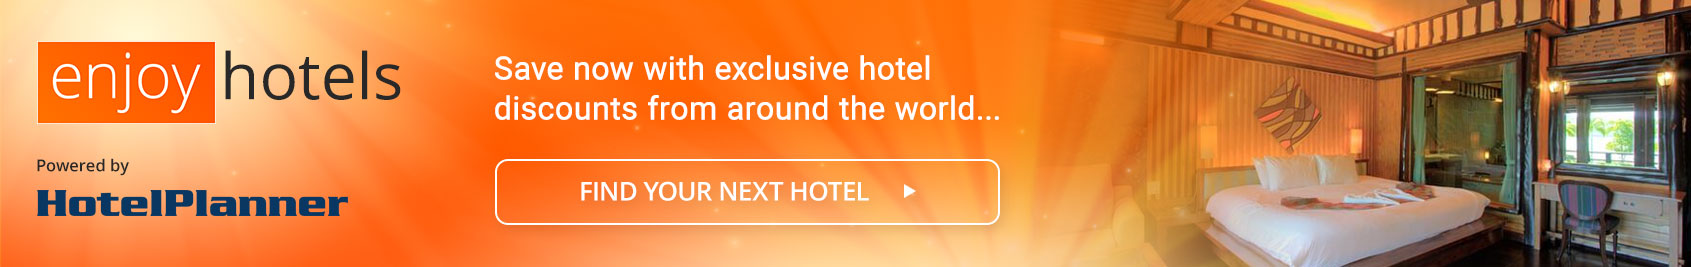 Exclusive Hotel Deals with HotelPlanner